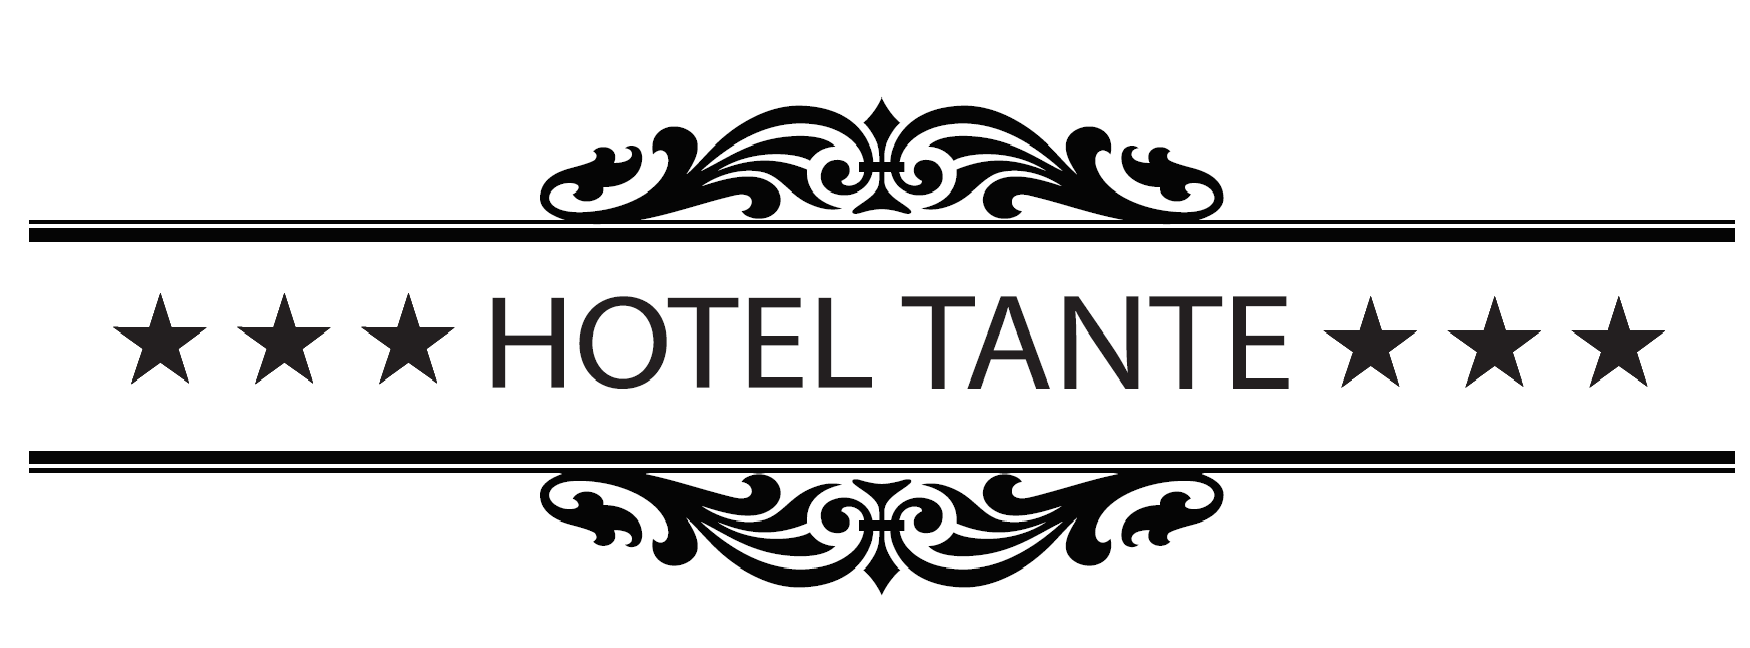 Hotel tante